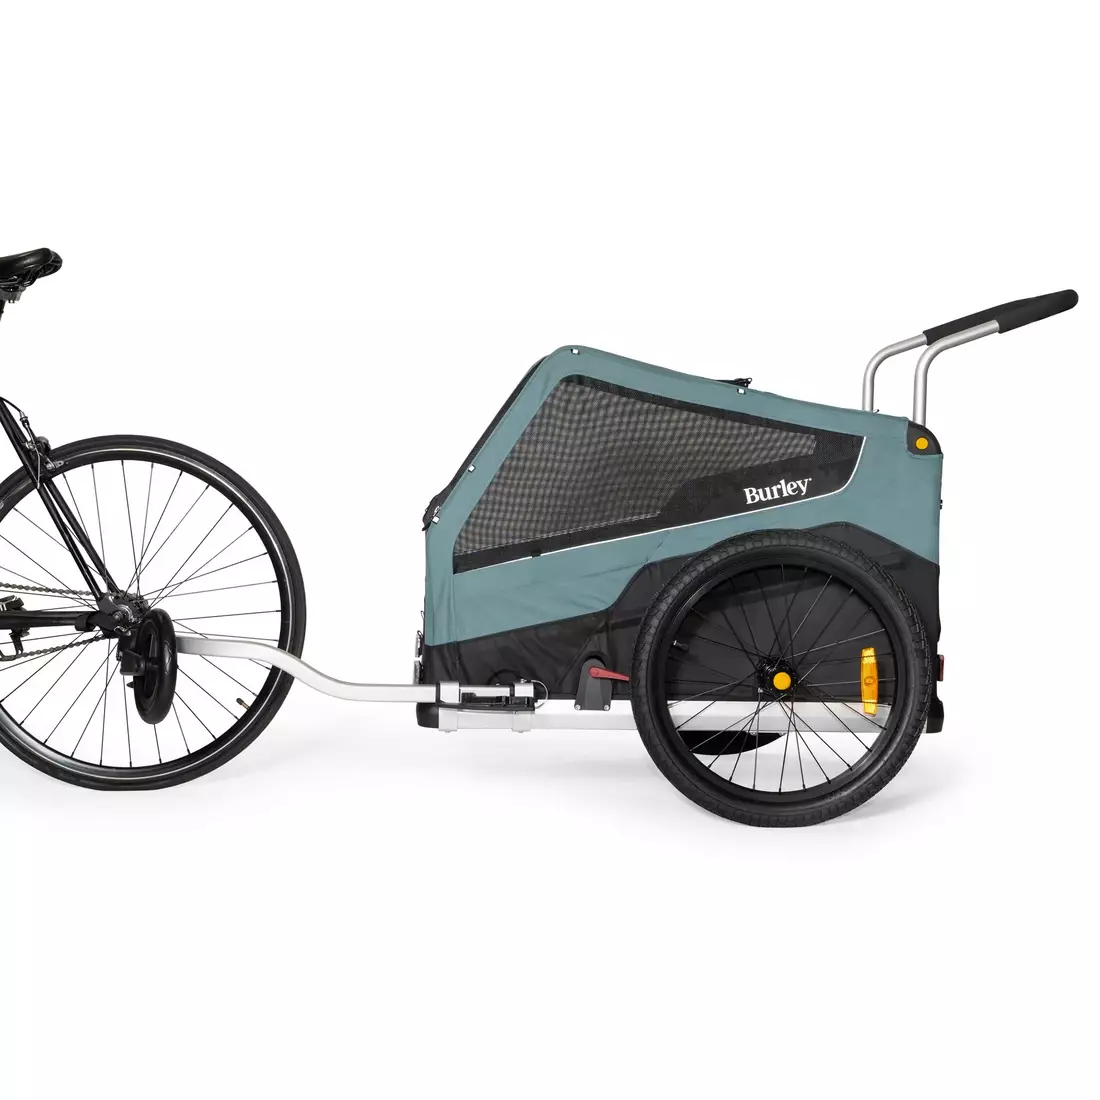 BURLEY TAIL BARK RANGER XL remorca de bicicleta pentru curea, albastra si neagra